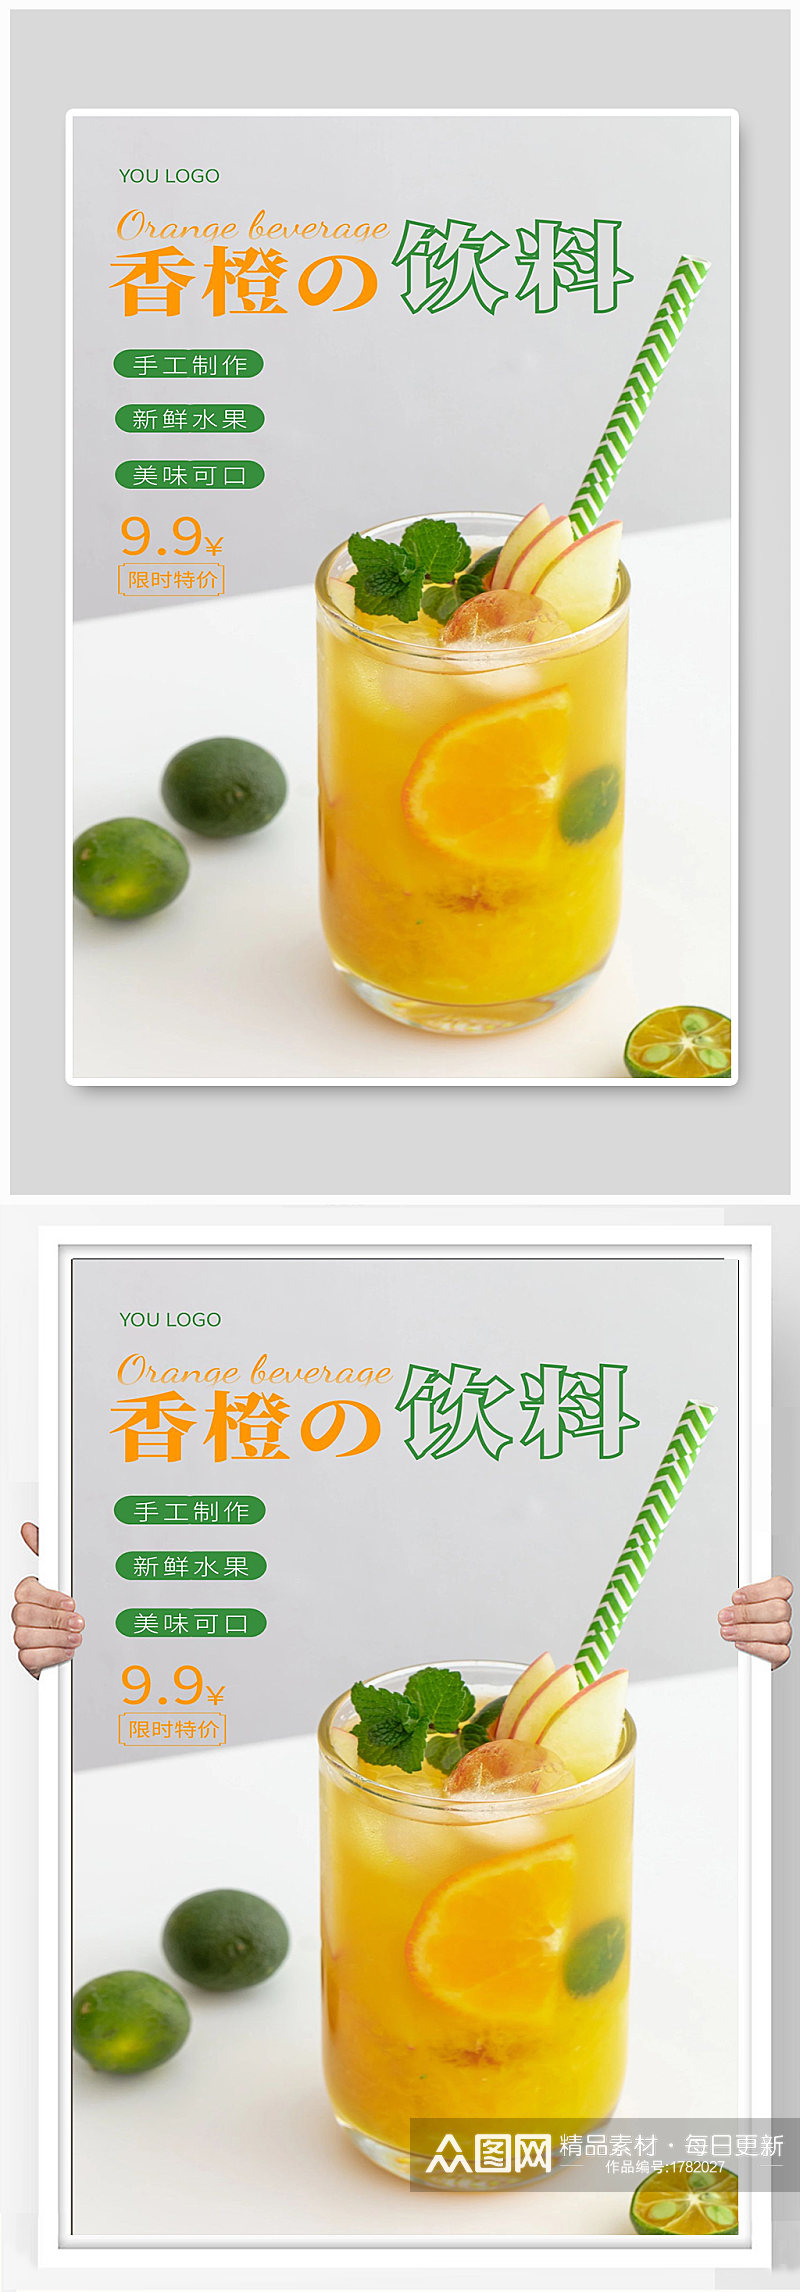 果汁宣传海报设计制作素材